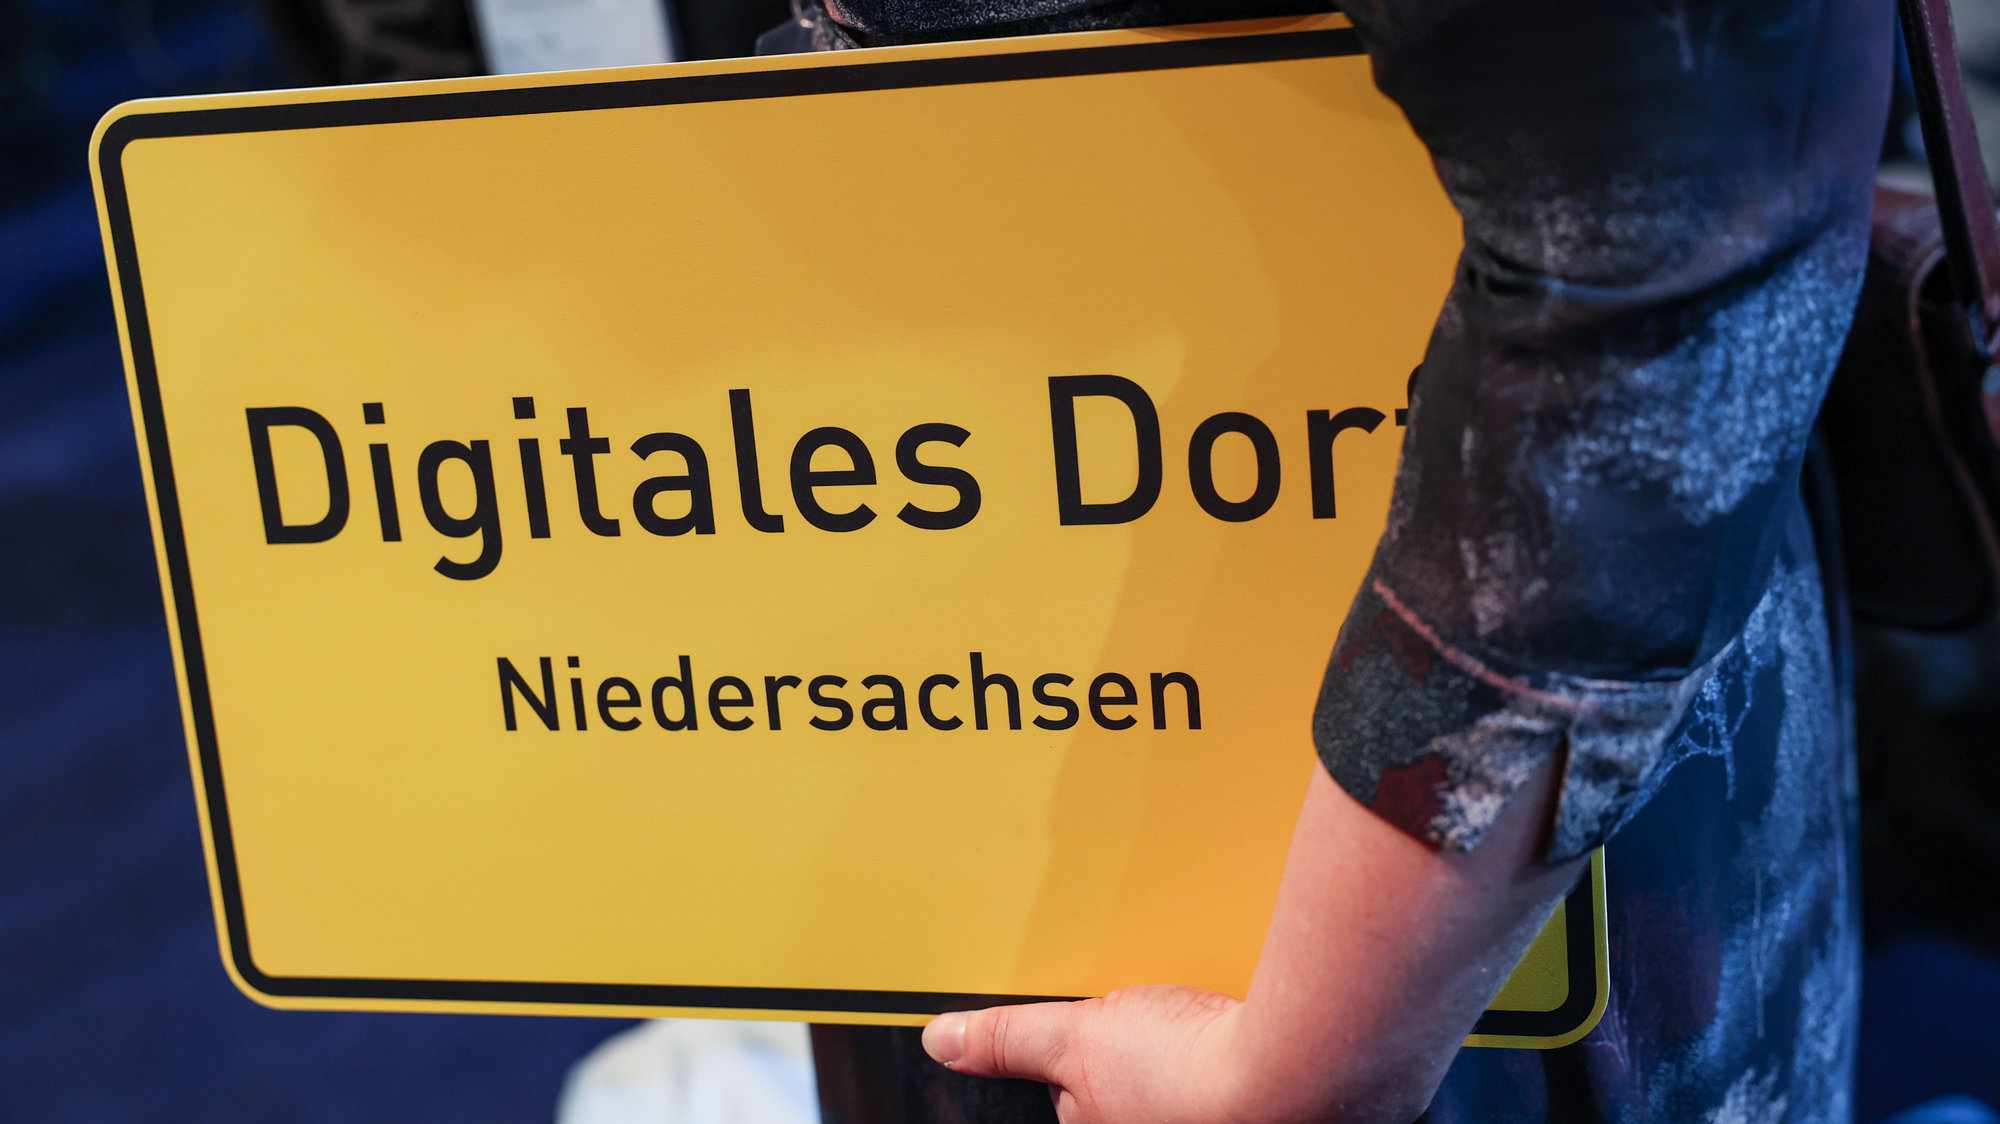 Masterplan Digitalisierung: Auch bei der 5G-Versorgung ist Niedersachsen nationaler Vorreiter. Niedersachsen hat die höchste Anzahl an 5G-Inititaitiven mit Bundesförderung.